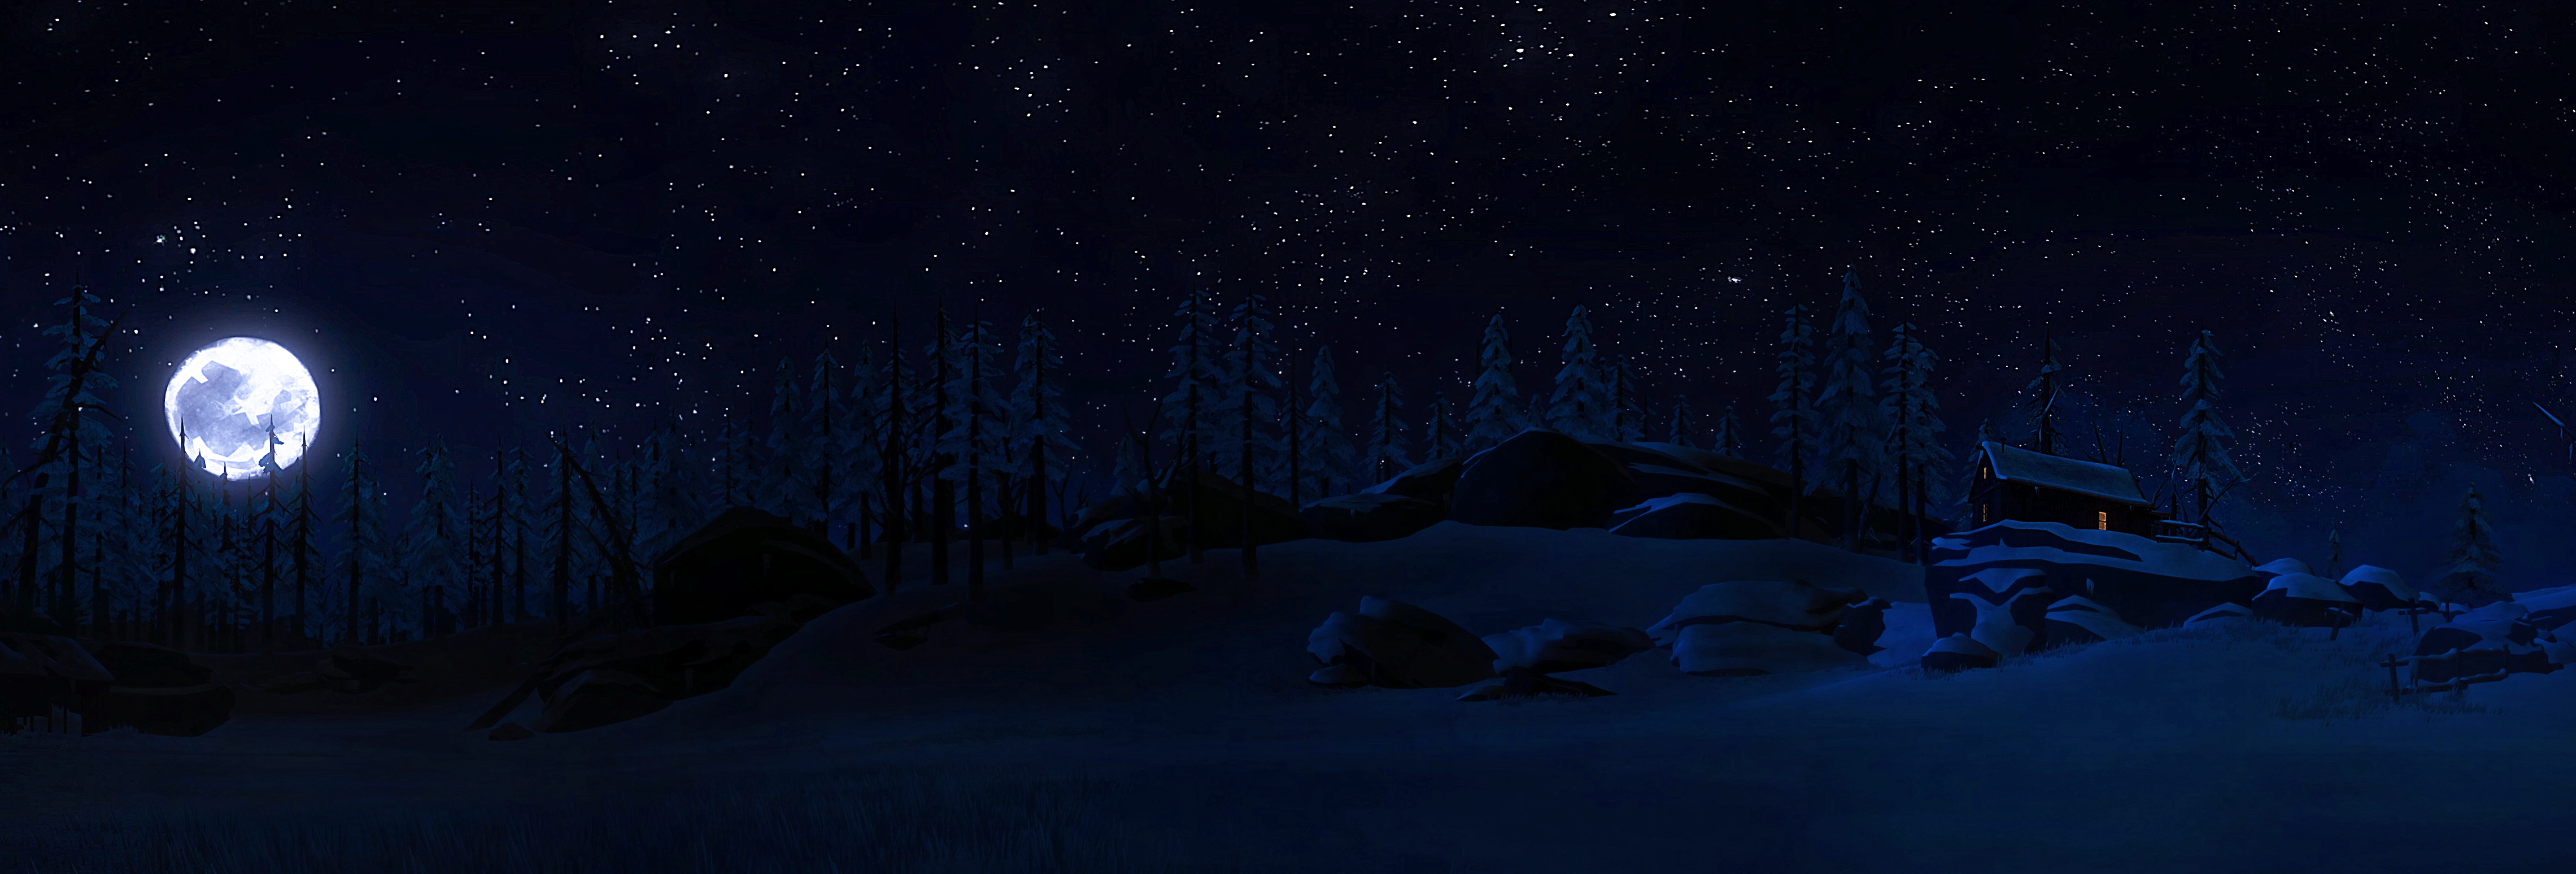 Панорама ночь в сказочном лесу